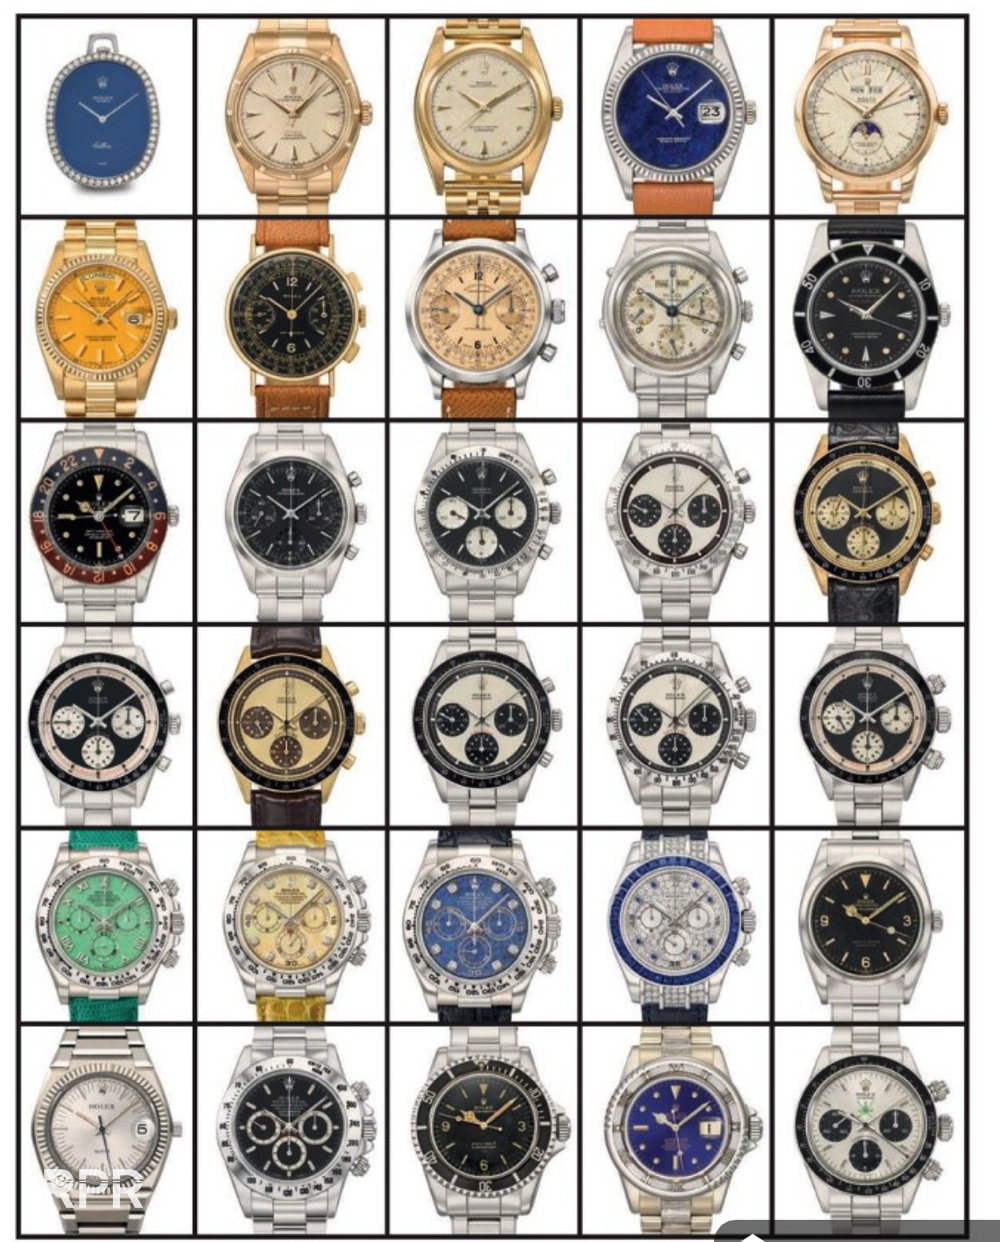 Christie's Dedicated Vintage Rolex Auction - Rolex Passion Report